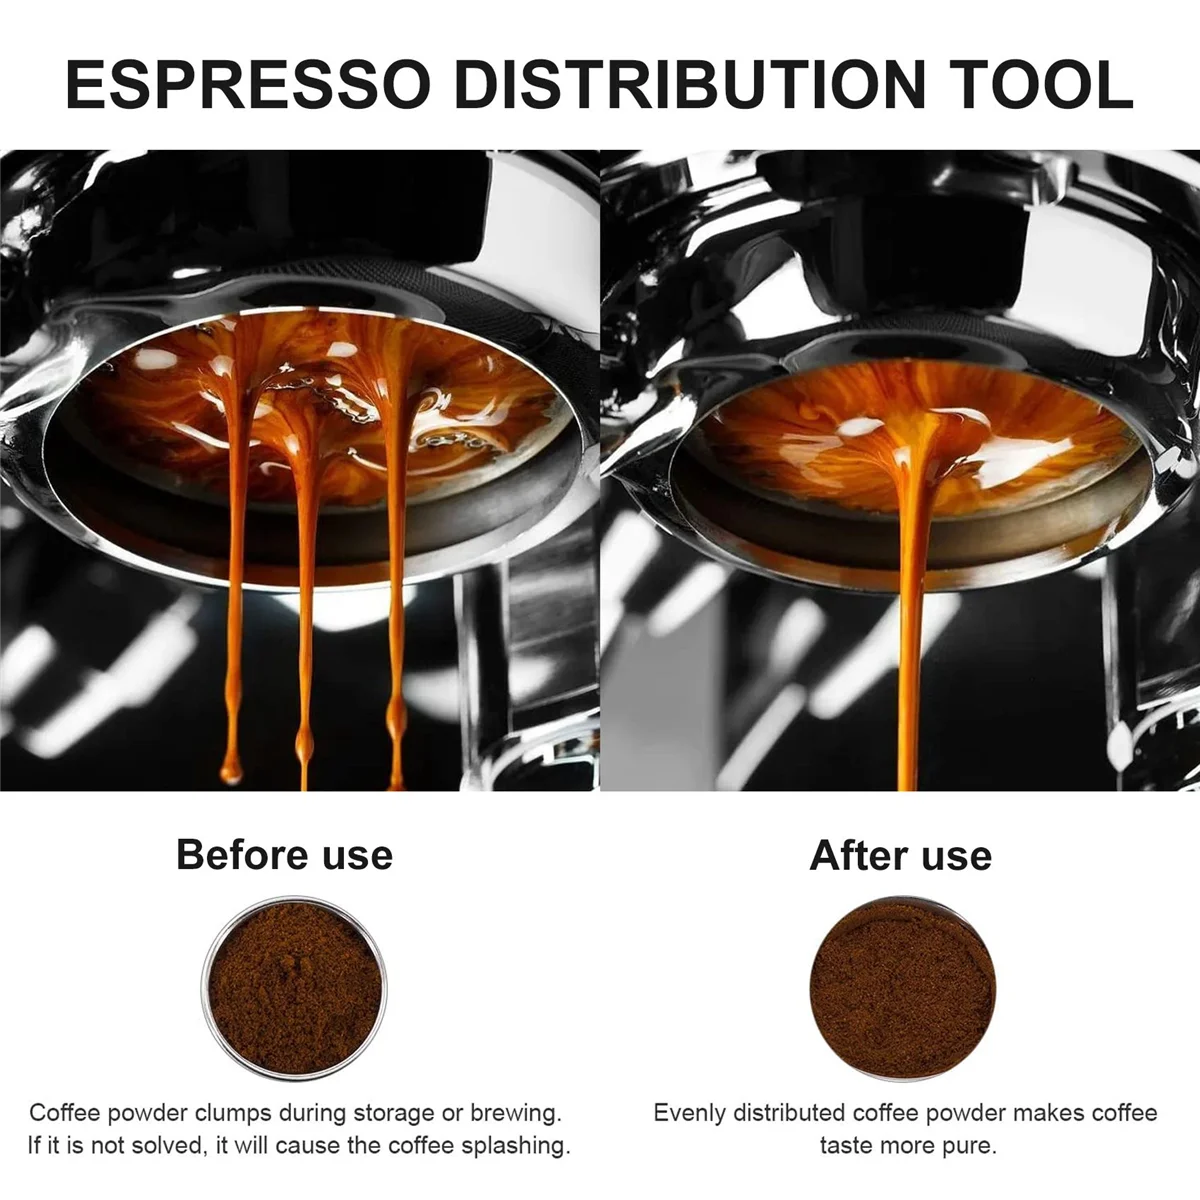 58 мм Ручной Кофейный порошок для Бариста, Эспрессо, Латте, Распределитель для вскрытия кофе, инструмент для выравнивания кофейного порошка игольчатого типа - 5